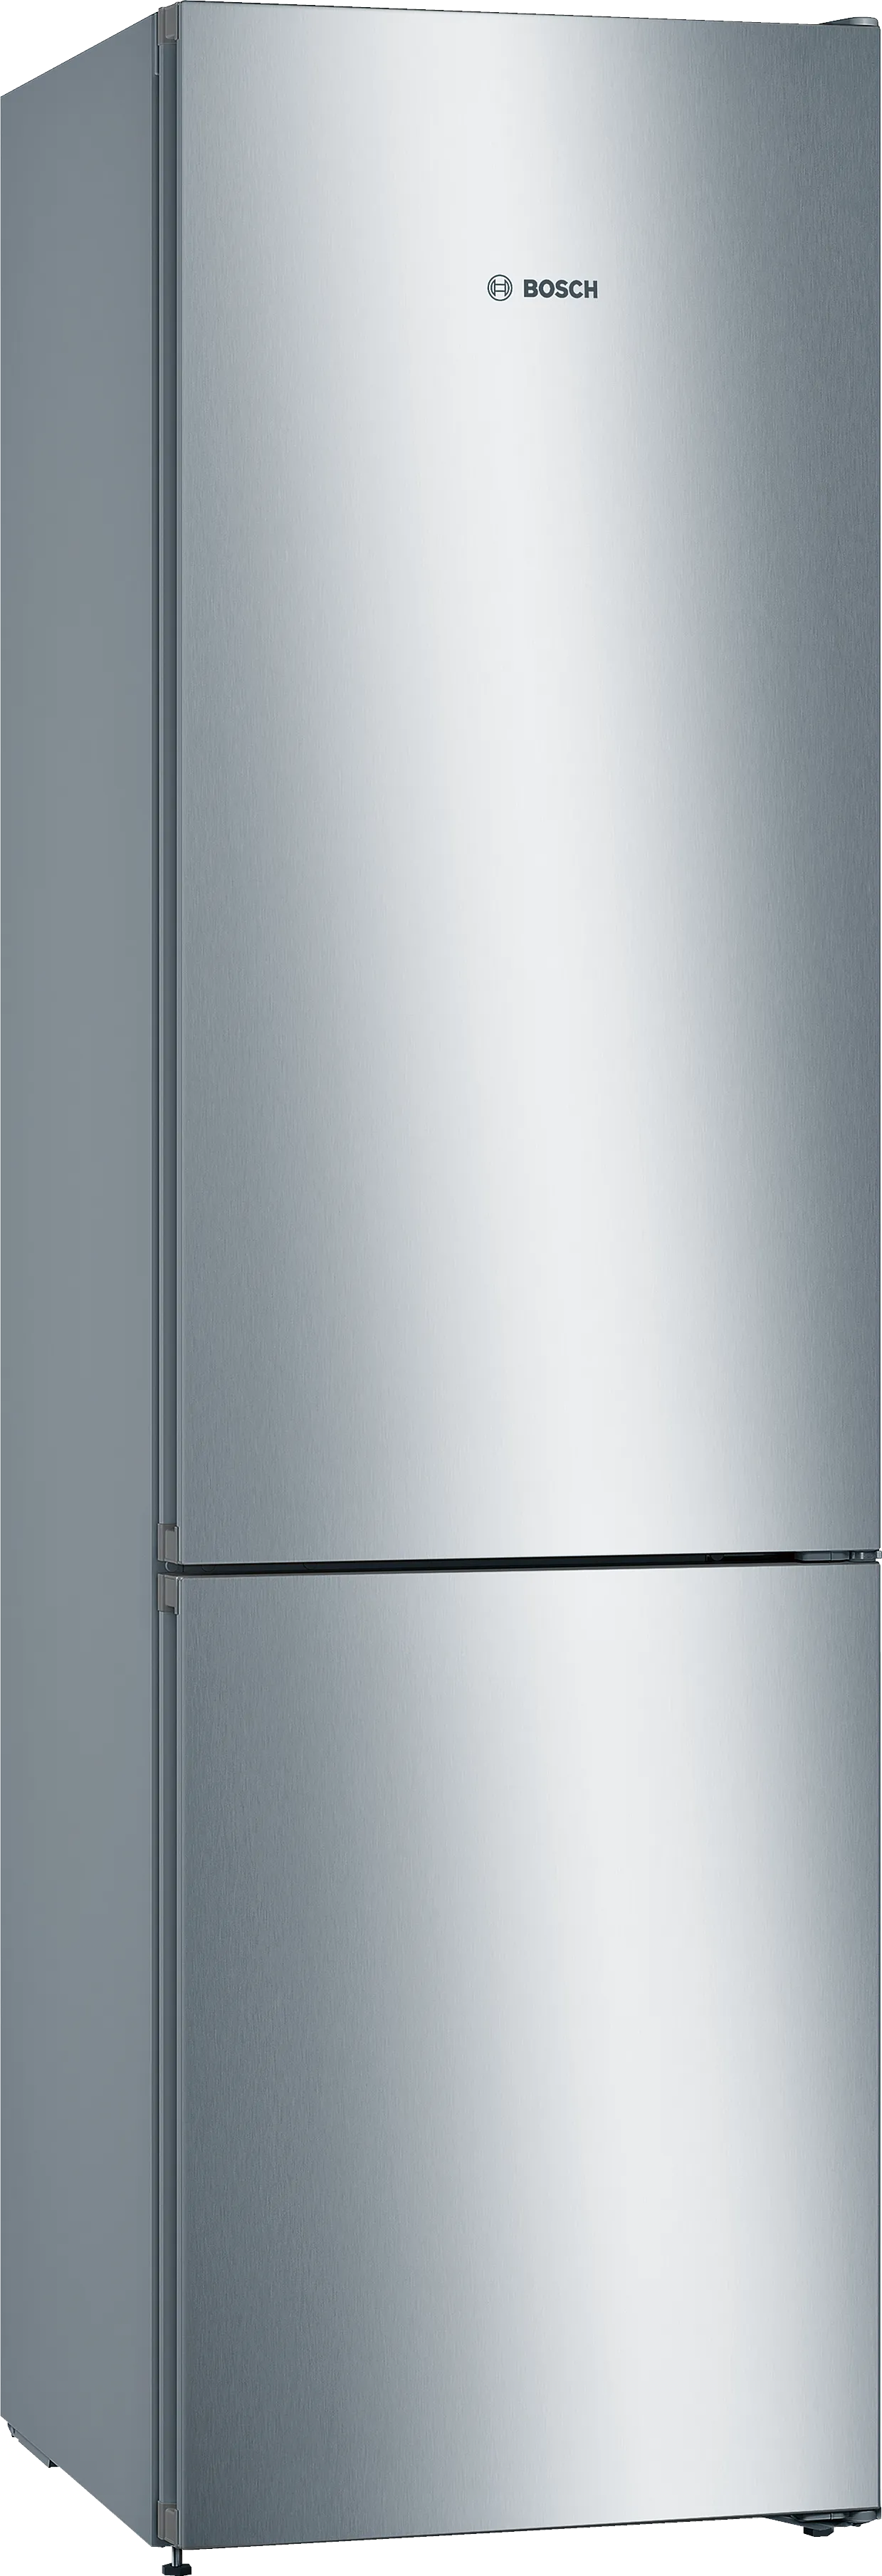 Serija 4 Samostojeći frižider sa zamrzivačem dole 203 x 60 cm Izgled nerđajućeg čelika 